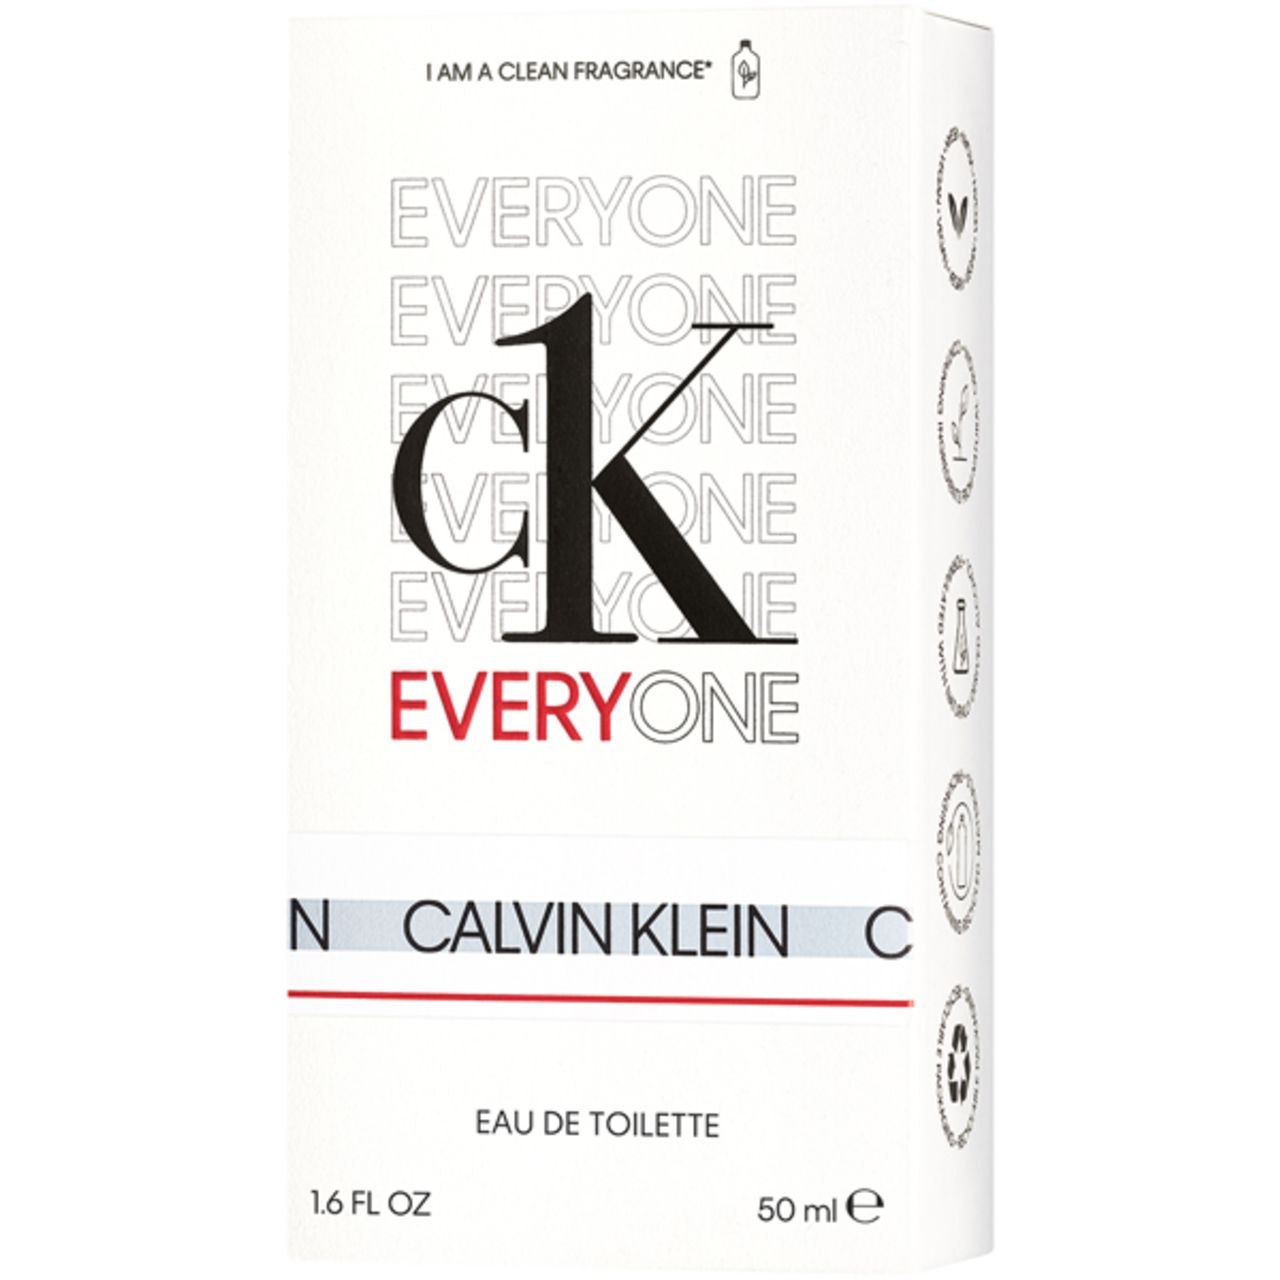 Calvin Klein, CK Everyone E.d.T. Nat. Spray